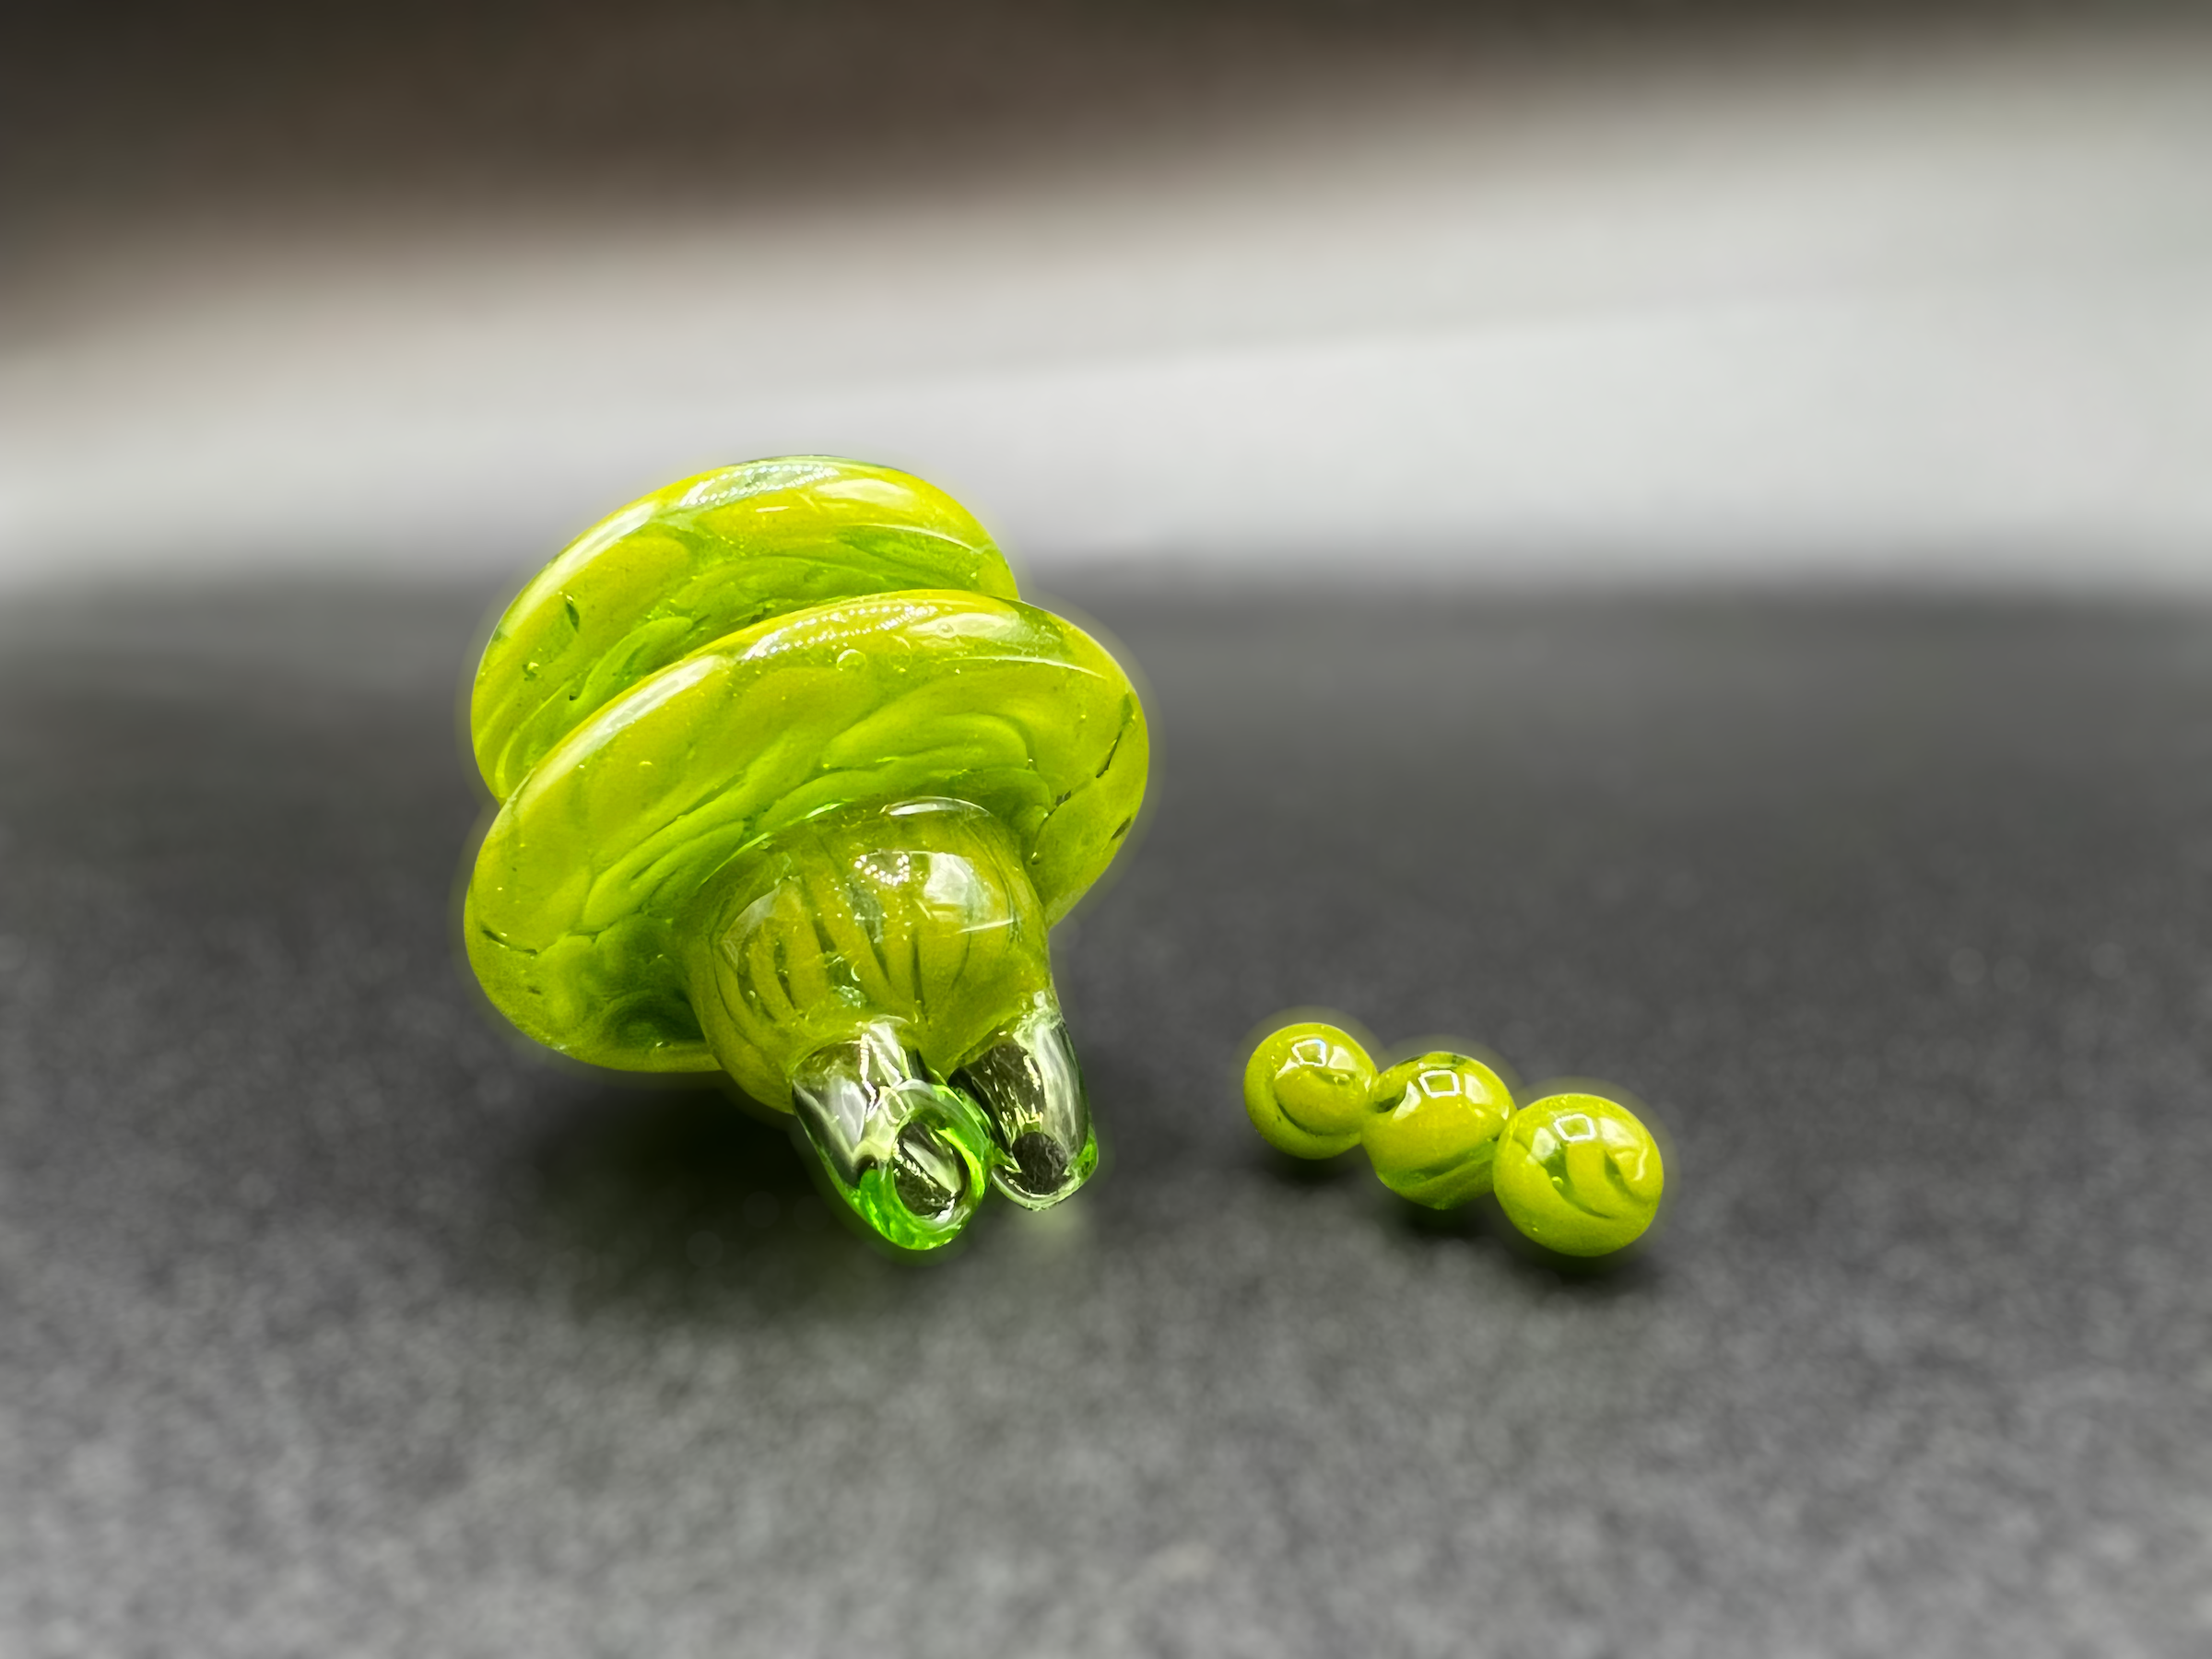 Algae green Terp pearls